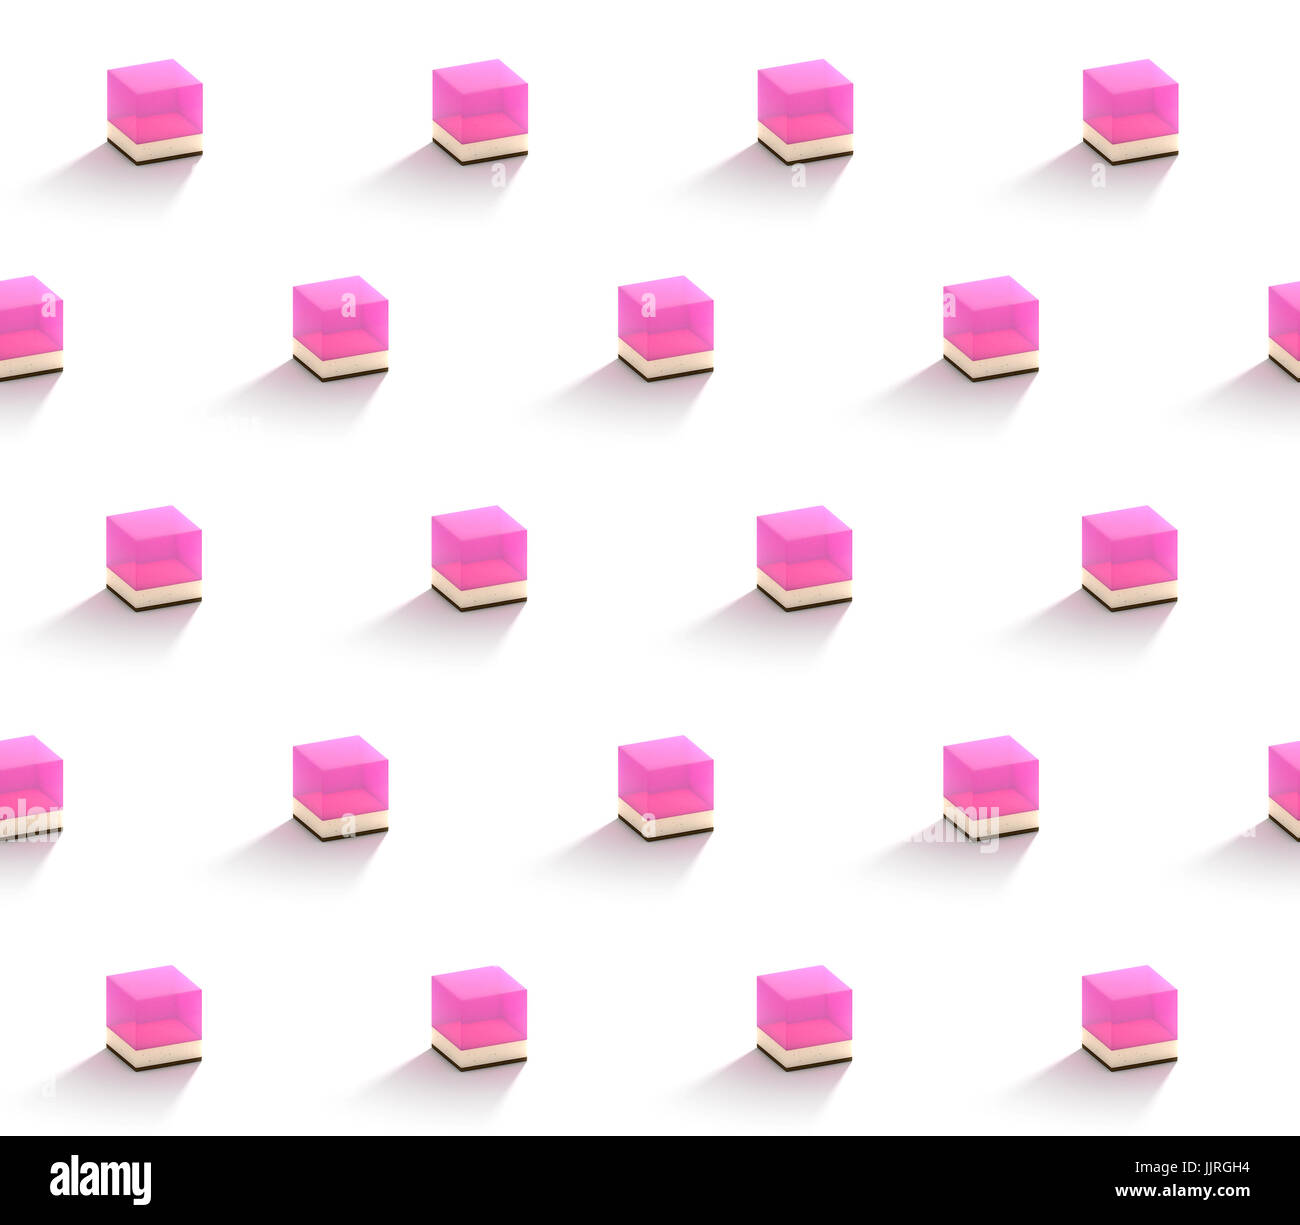 Tagliata a cubetti da dessert torte disposti in quadrato modelli su sfondo bianco Foto Stock